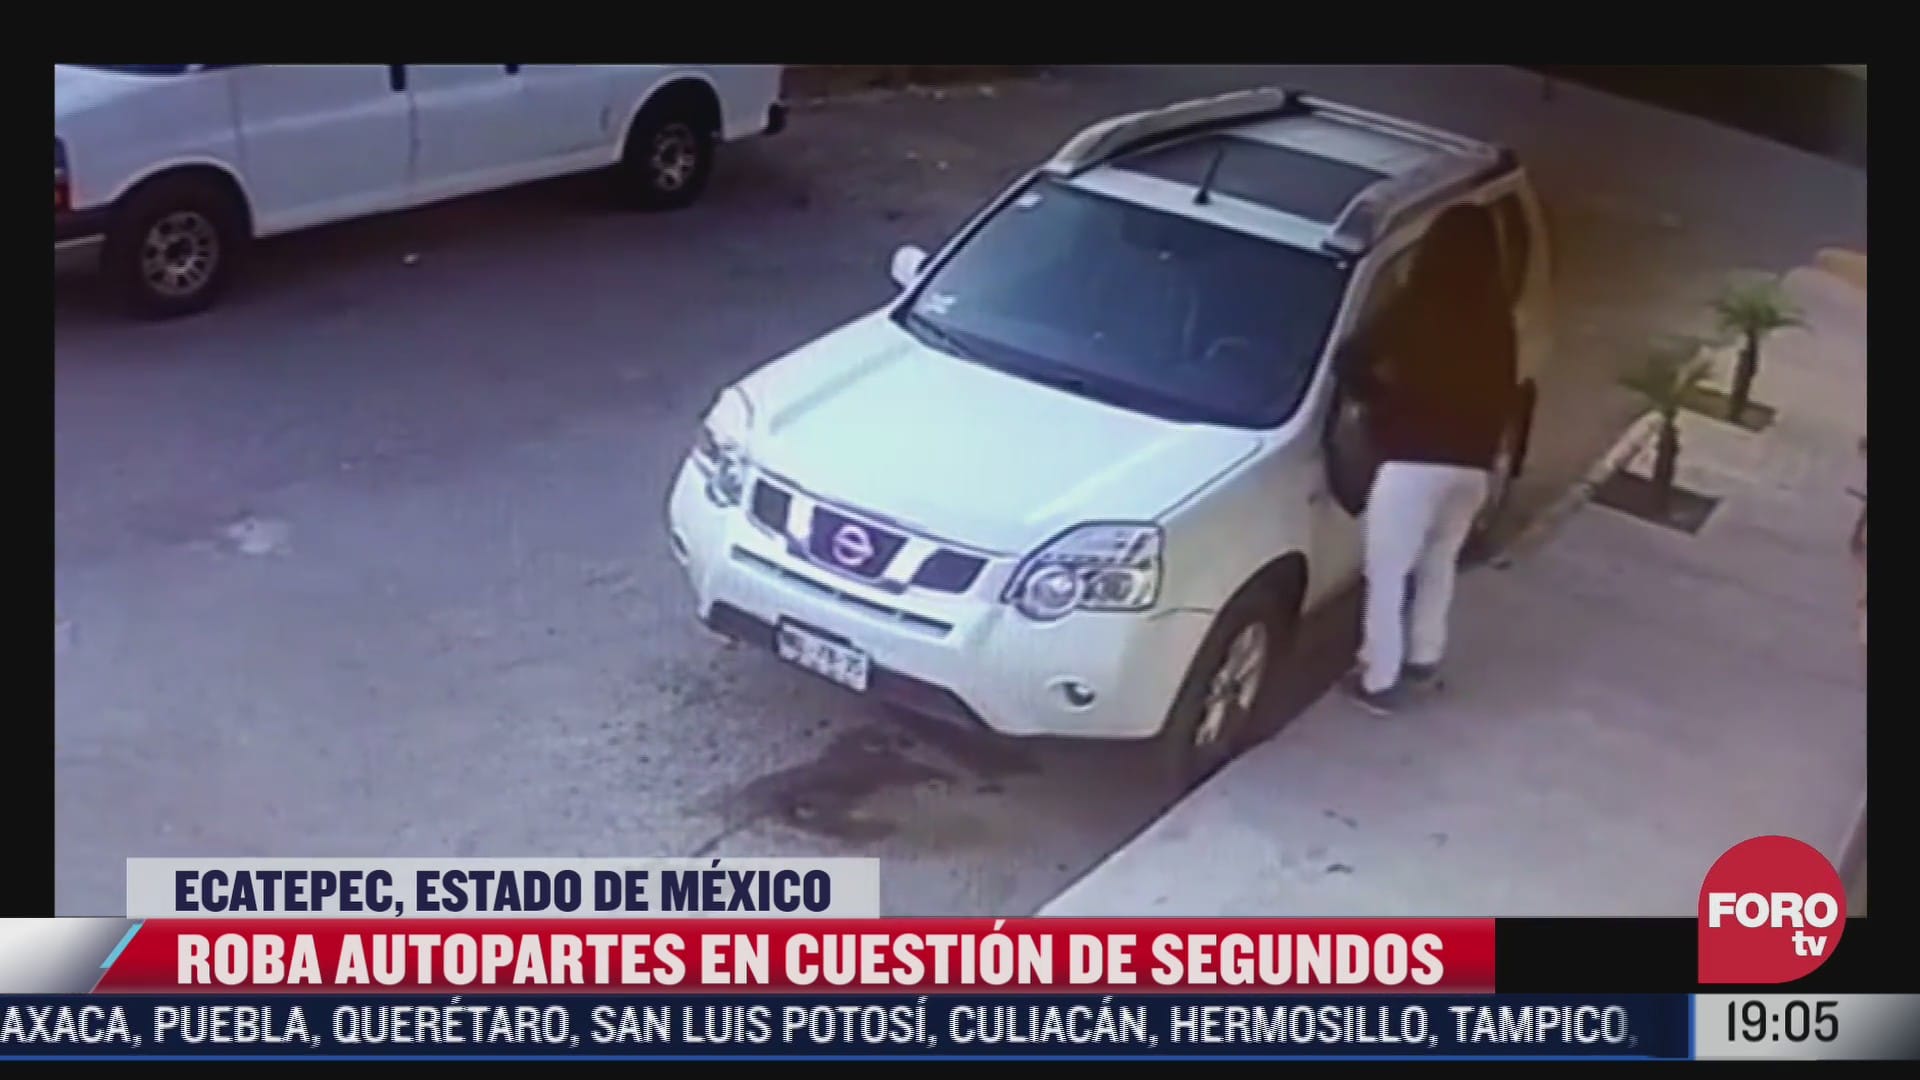 captan en video el robo de autopartes en ecatepec edomex